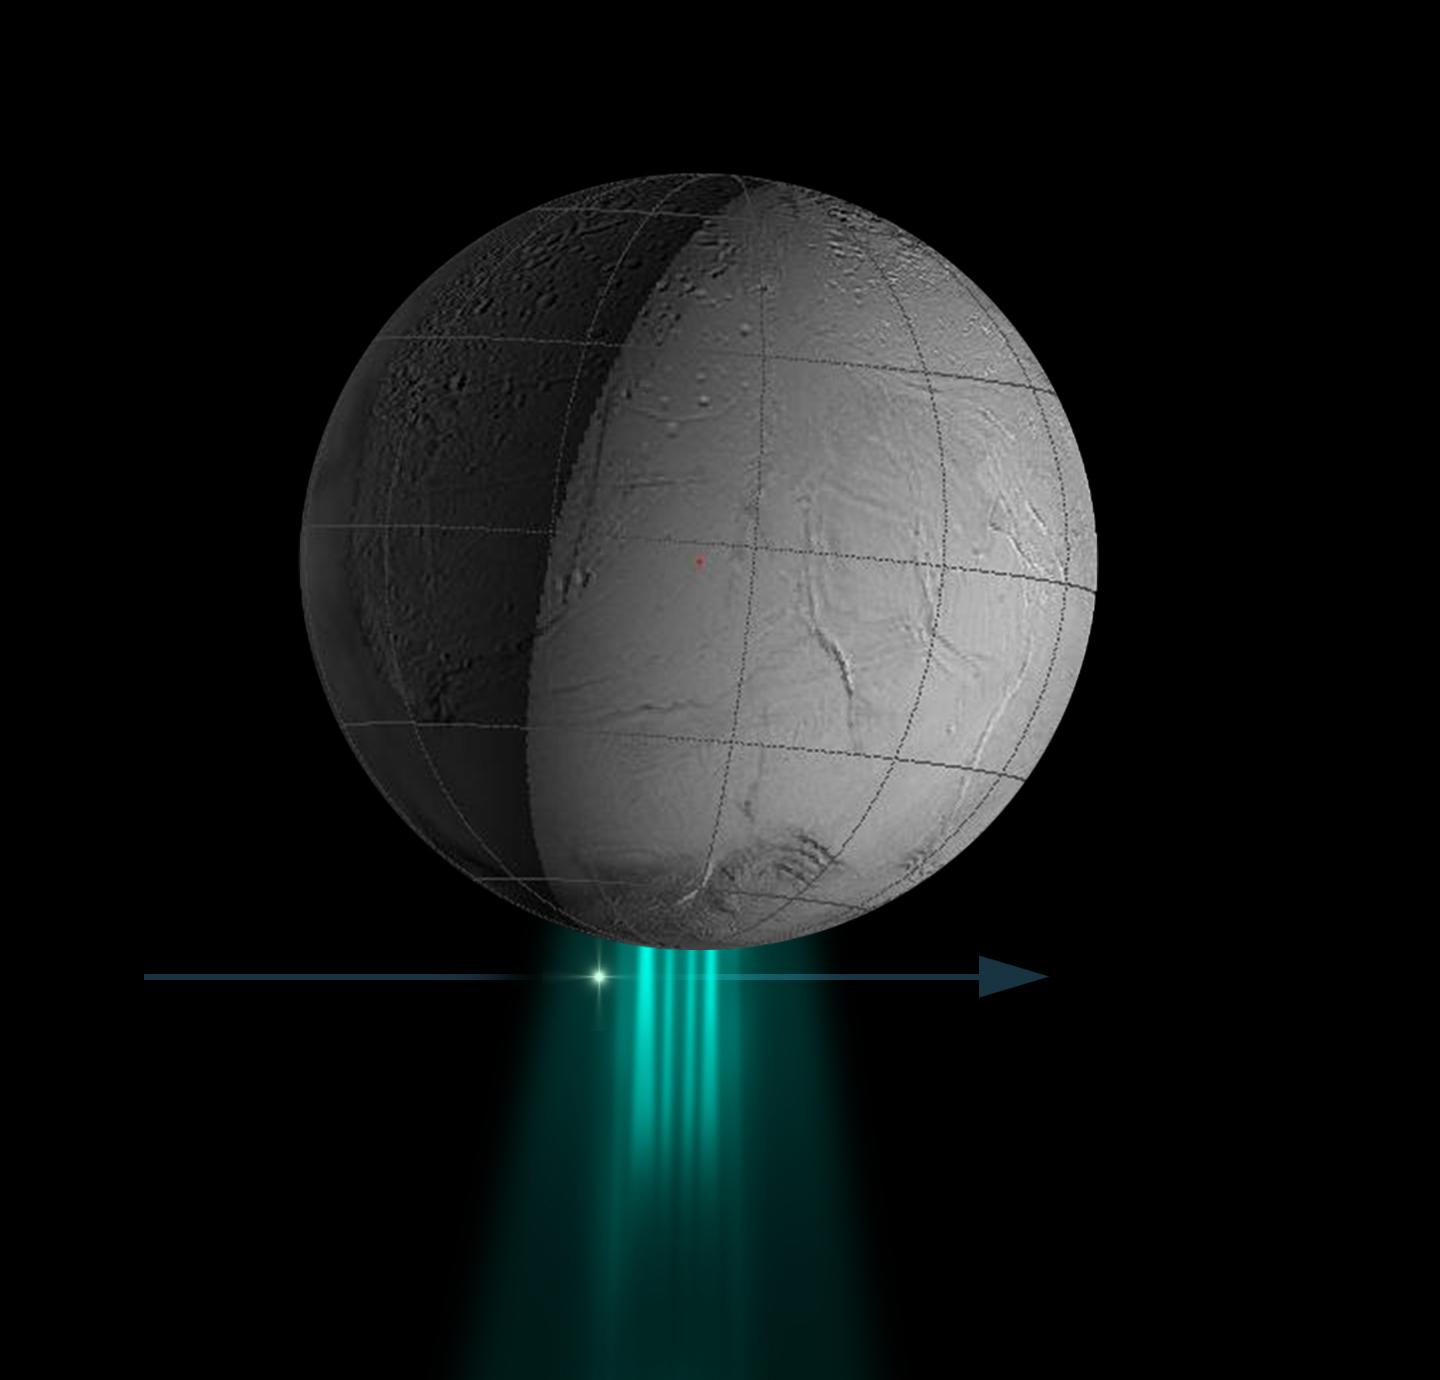 Enceladus' water plume